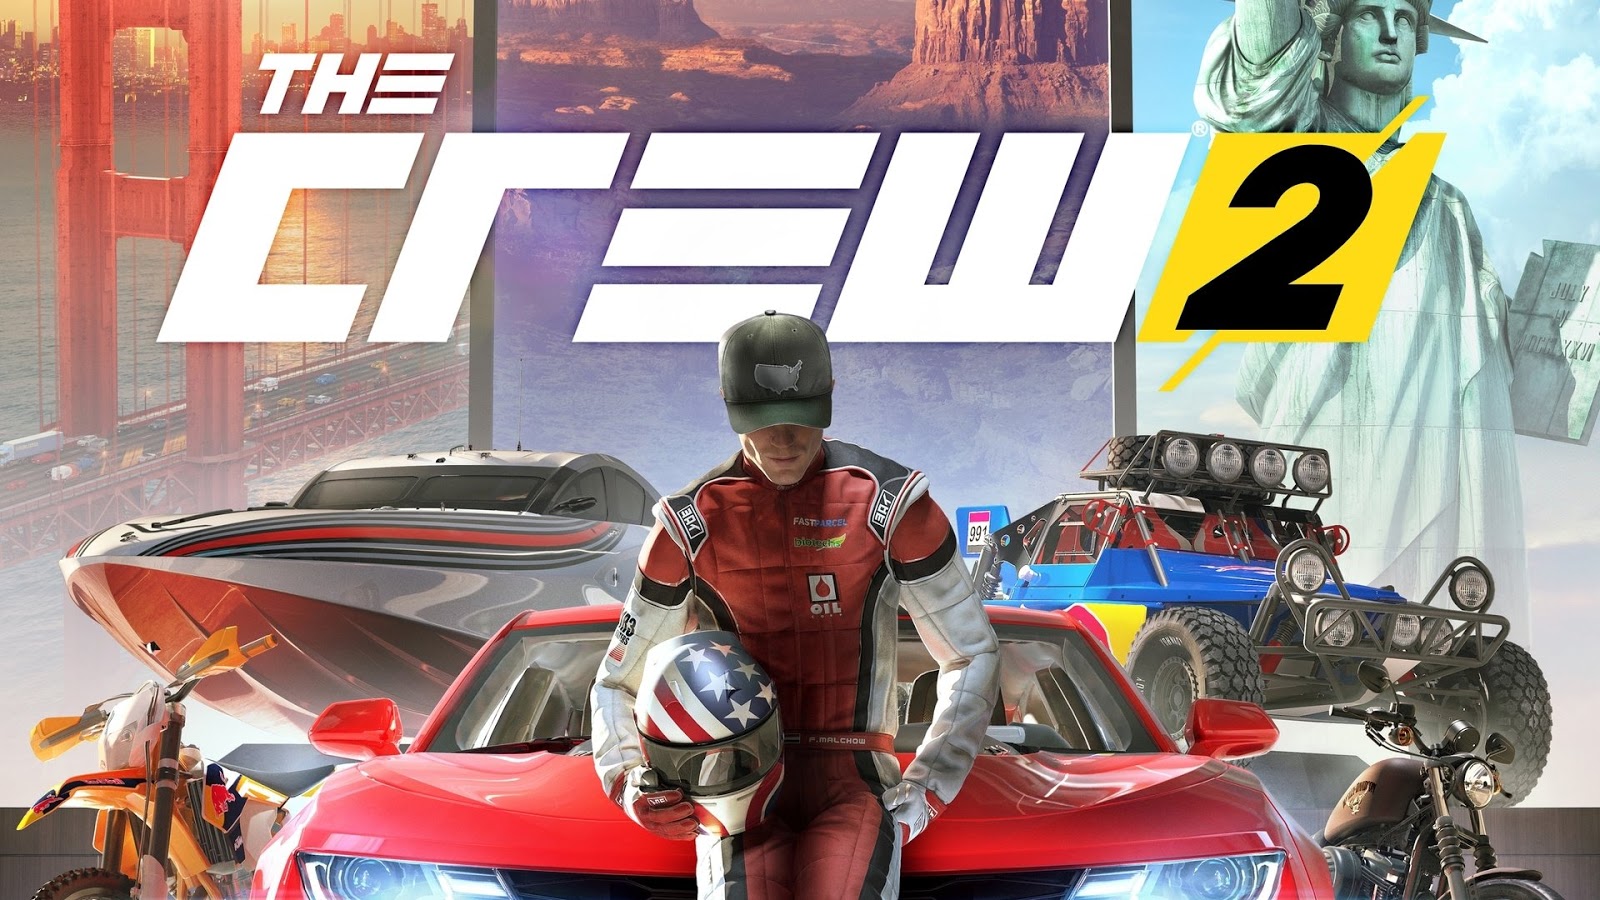 Prévia The Crew 2 (Multi) — ambicioso em ser maior e melhor GameBlast